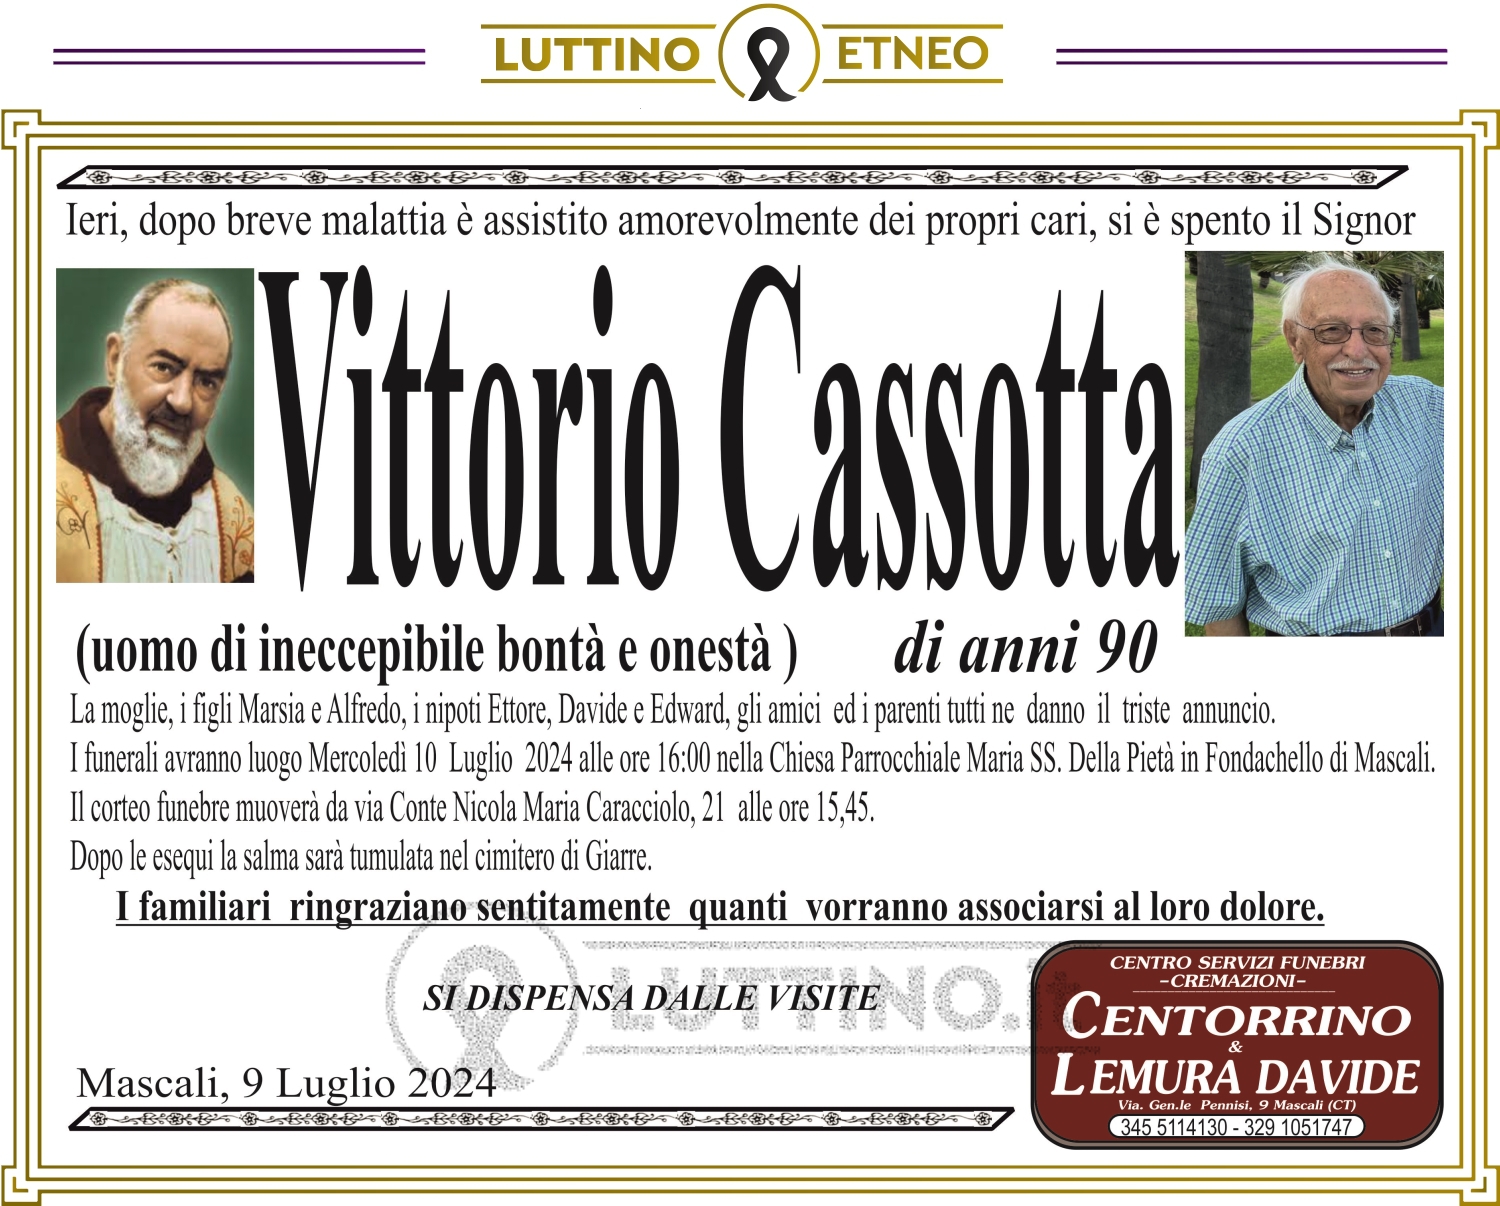 Vittorio Cassotta